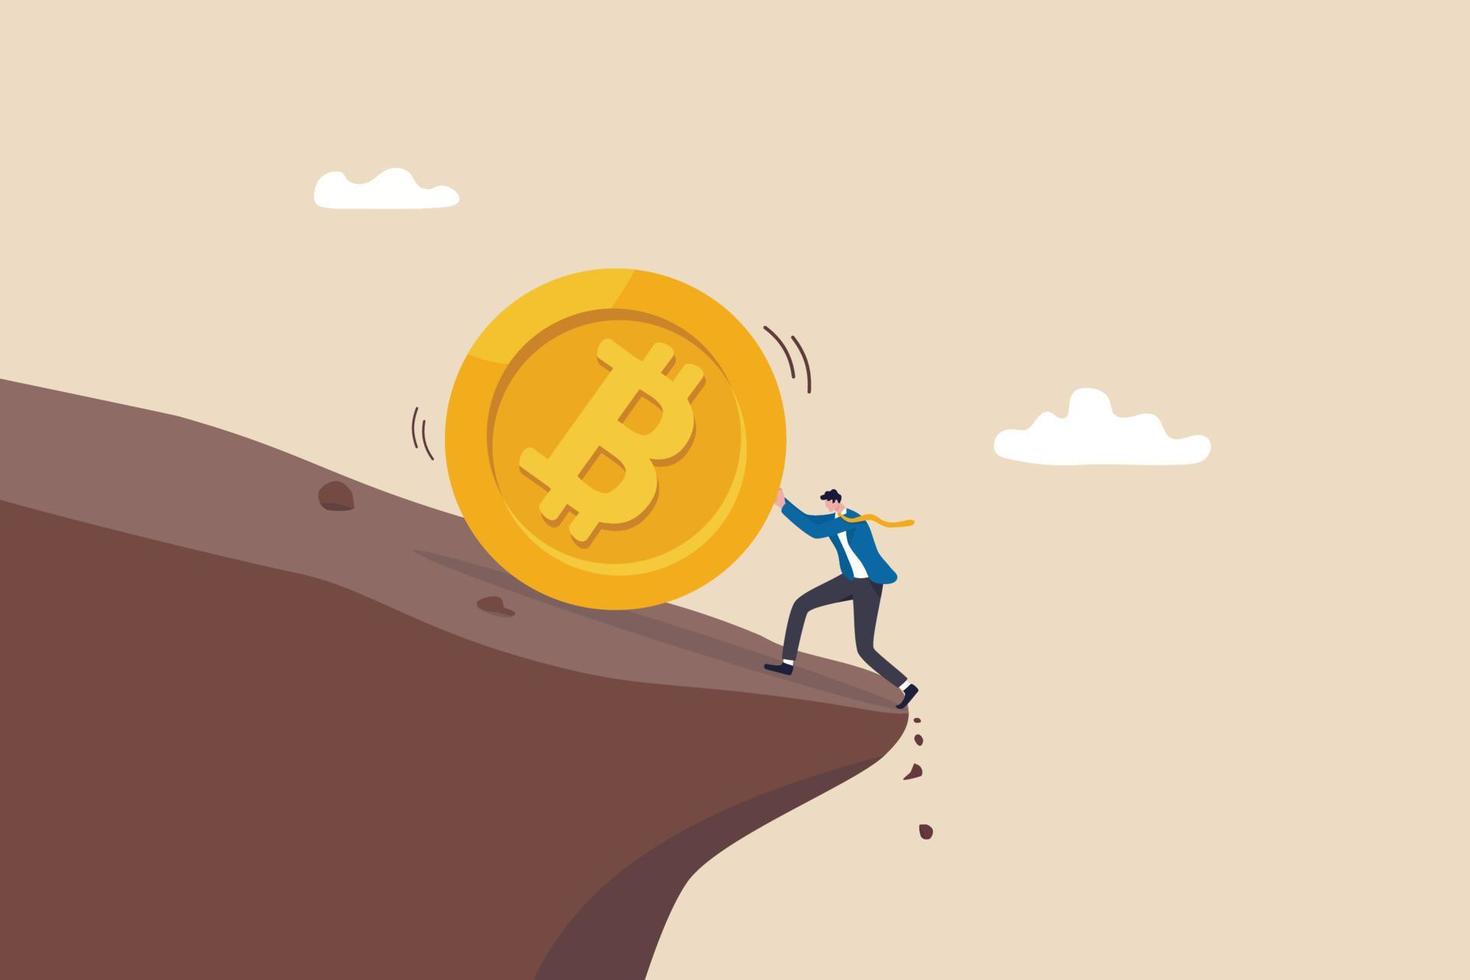 pressa bitcoin förhindrar att priset faller, kryptovalutorisk, fluktuationer eller volatilitet, kryptokris eller panikförsäljningskoncept, affärsmaninvesterare pressar bitcoin från att falla nerför klippan. vektor